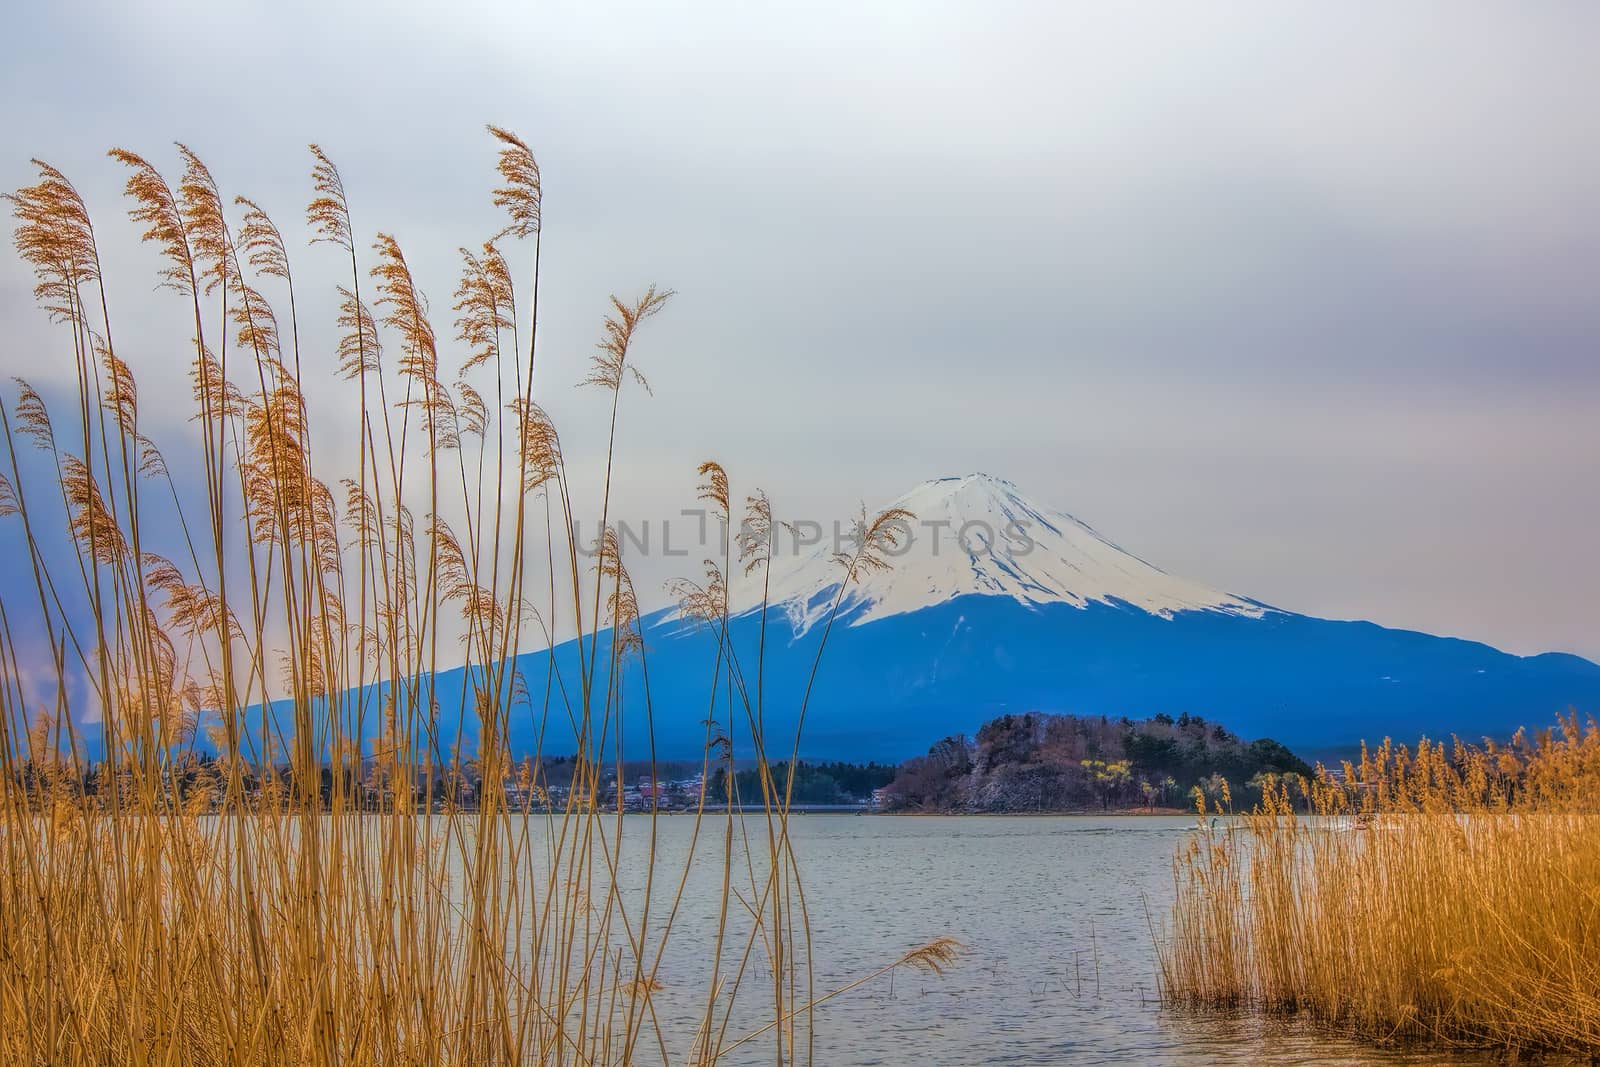 Mt Fuji by kjorgen